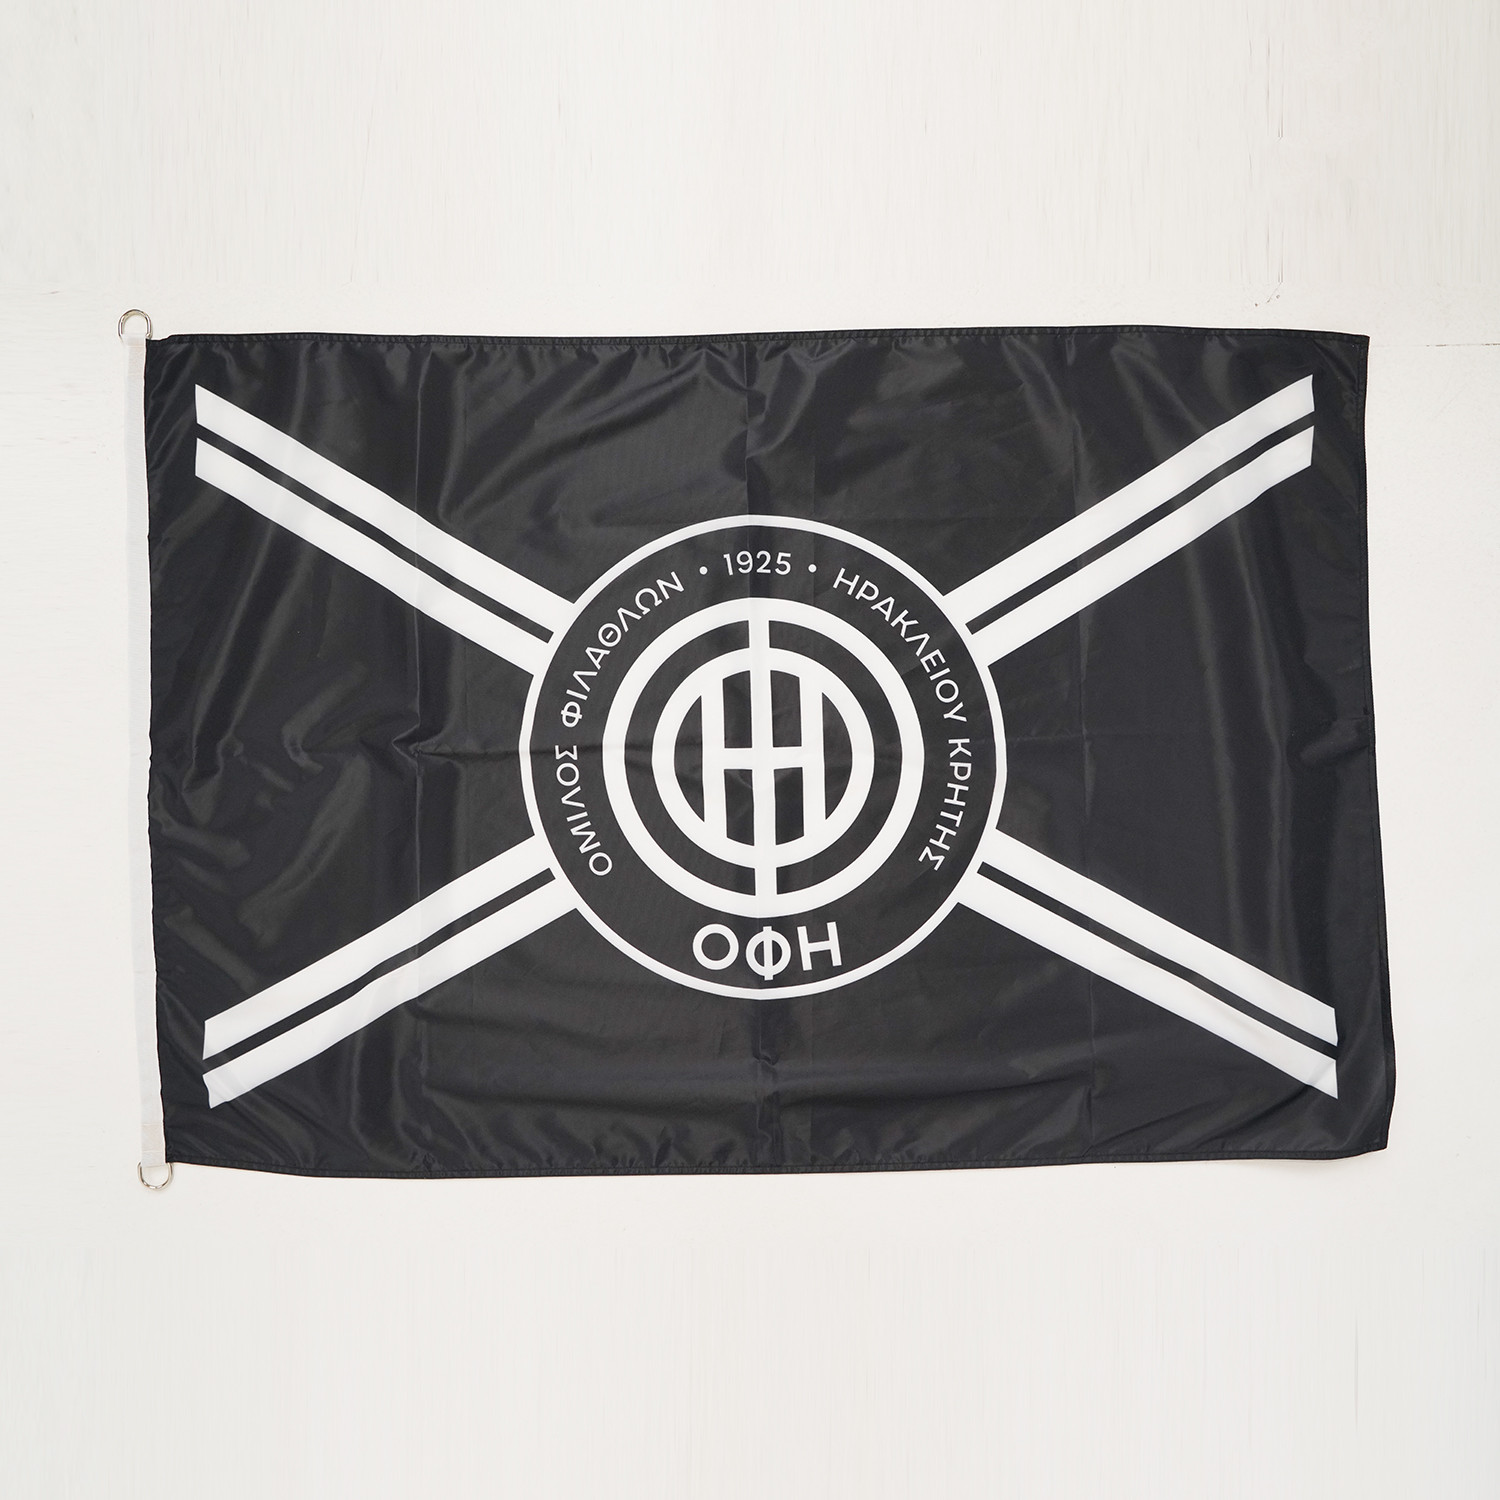 OFI OFFICIAL BRAND Σημαία (9000065774_1480)